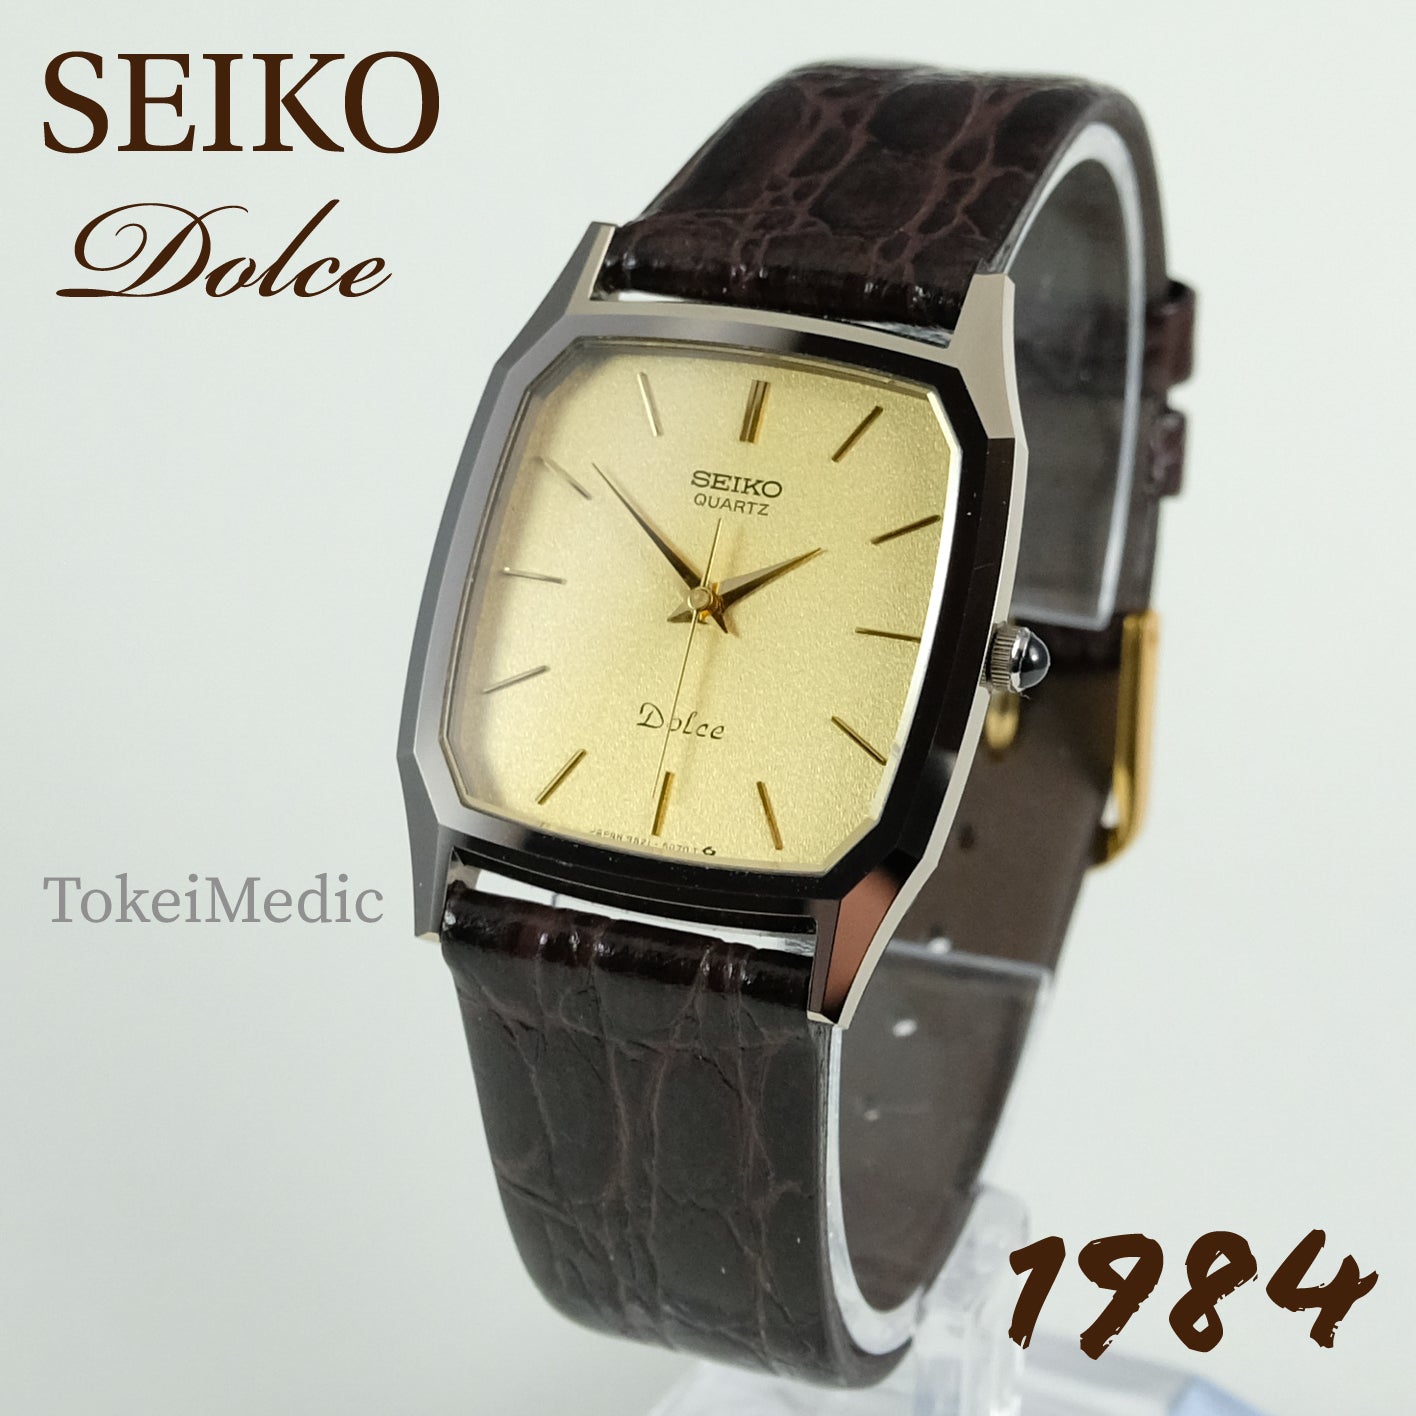 1984 Seiko Dolce 9521-5070